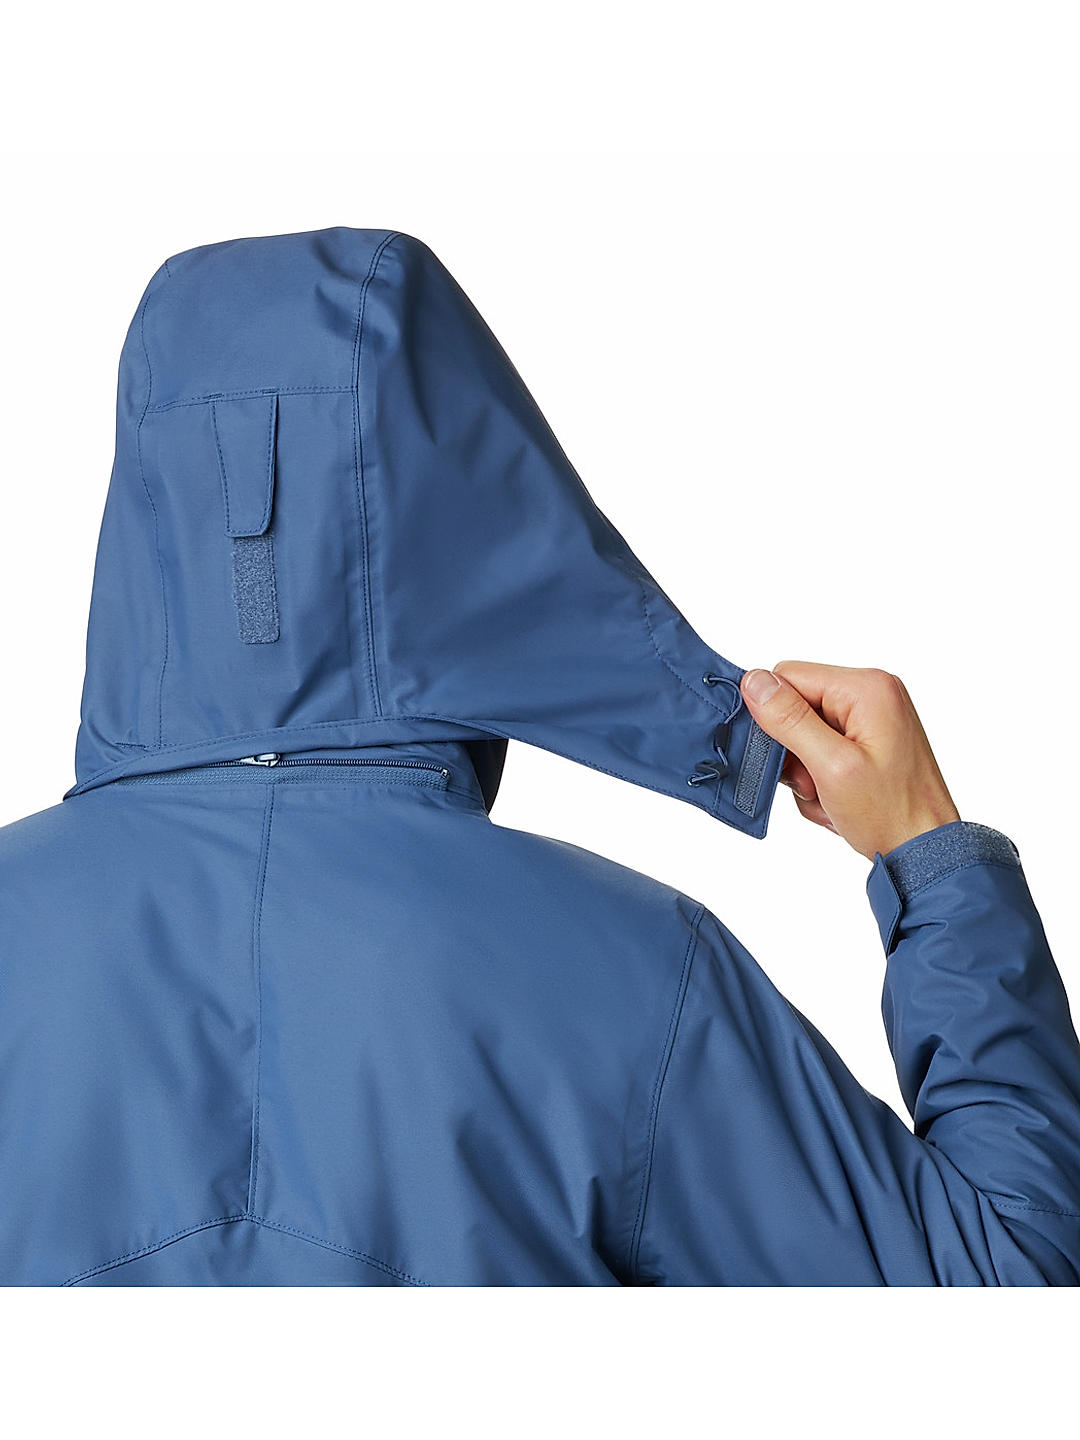 Buy Blue Bugaboo Ii Fleece Interchange Jacket for Men Online at ...